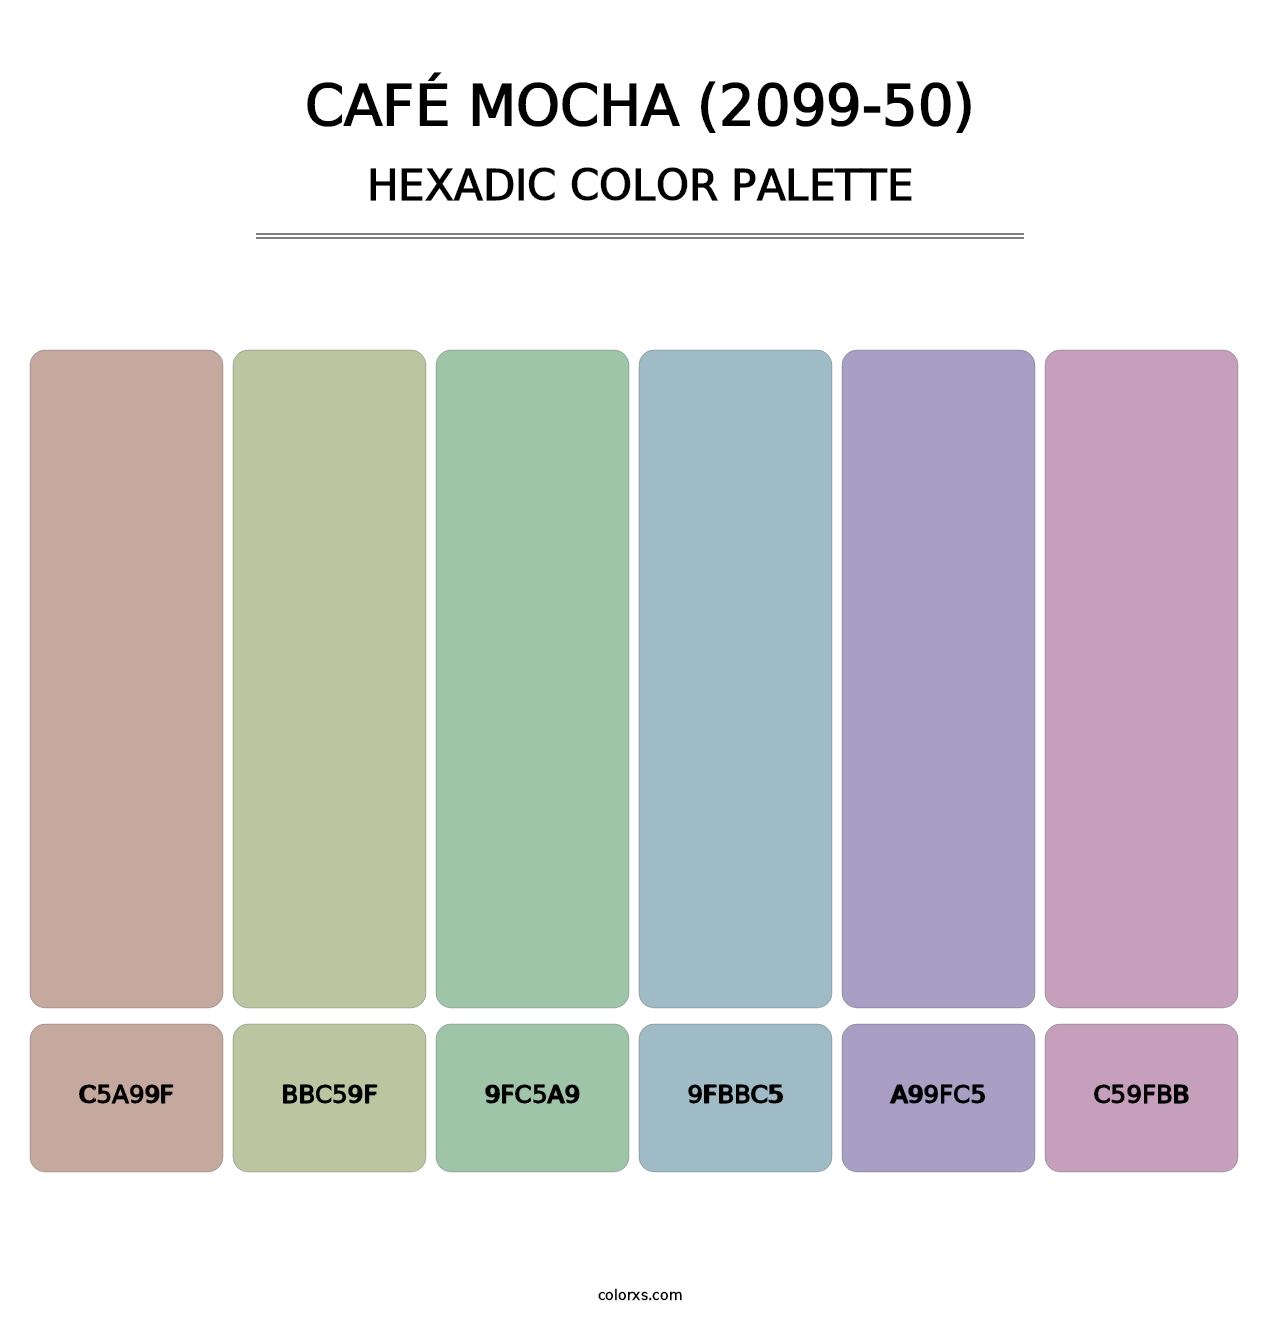 Café Mocha (2099-50) - Hexadic Color Palette